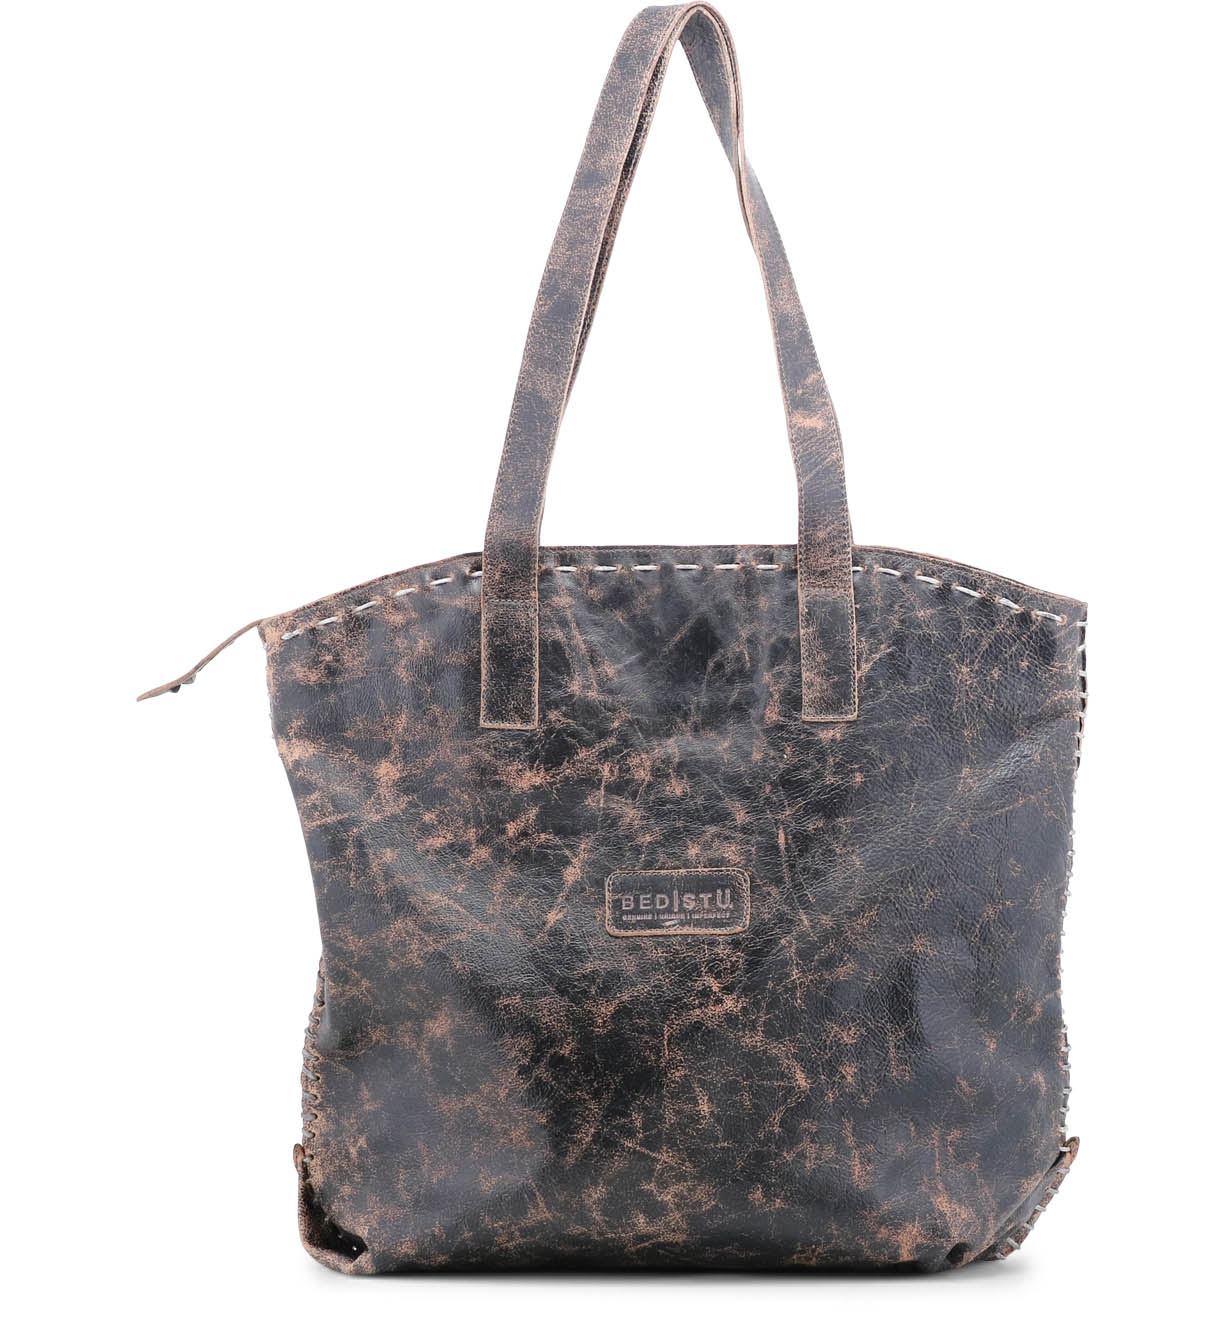 The Bed Stu Skye II black leather tote bag.